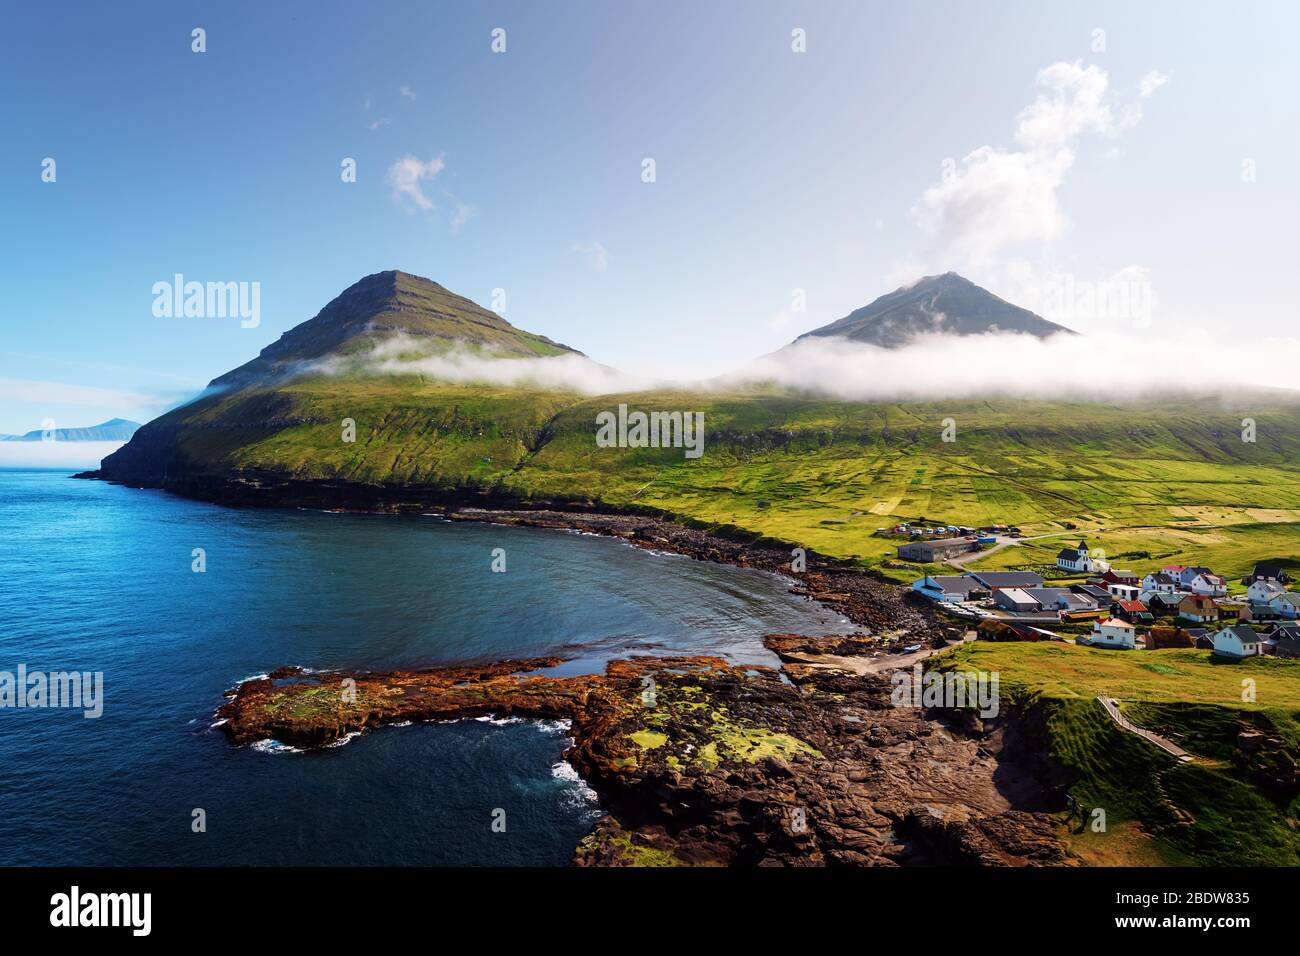 Vista pittoresca sul villaggio di Gjogv con case tipicamente colorate sull'isola Eysturoy, Isole Faroe, Danimarca. Fotografia di paesaggio Foto Stock